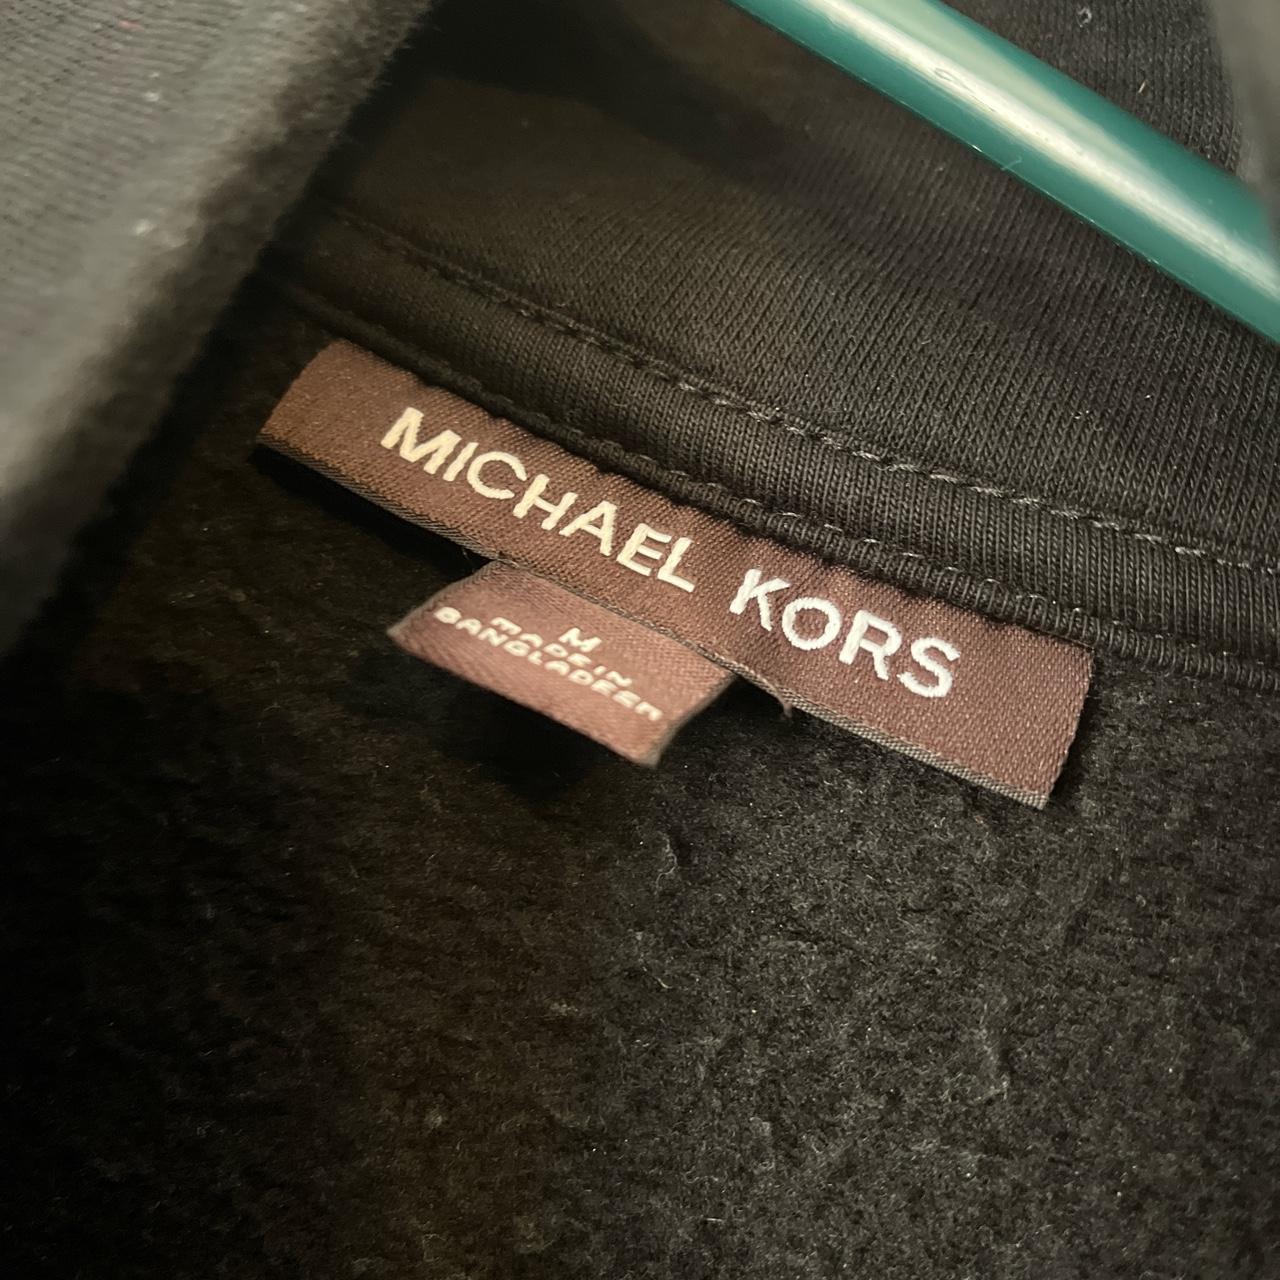 Michael Kors 81 Men’s Quarter Zip sweater. In